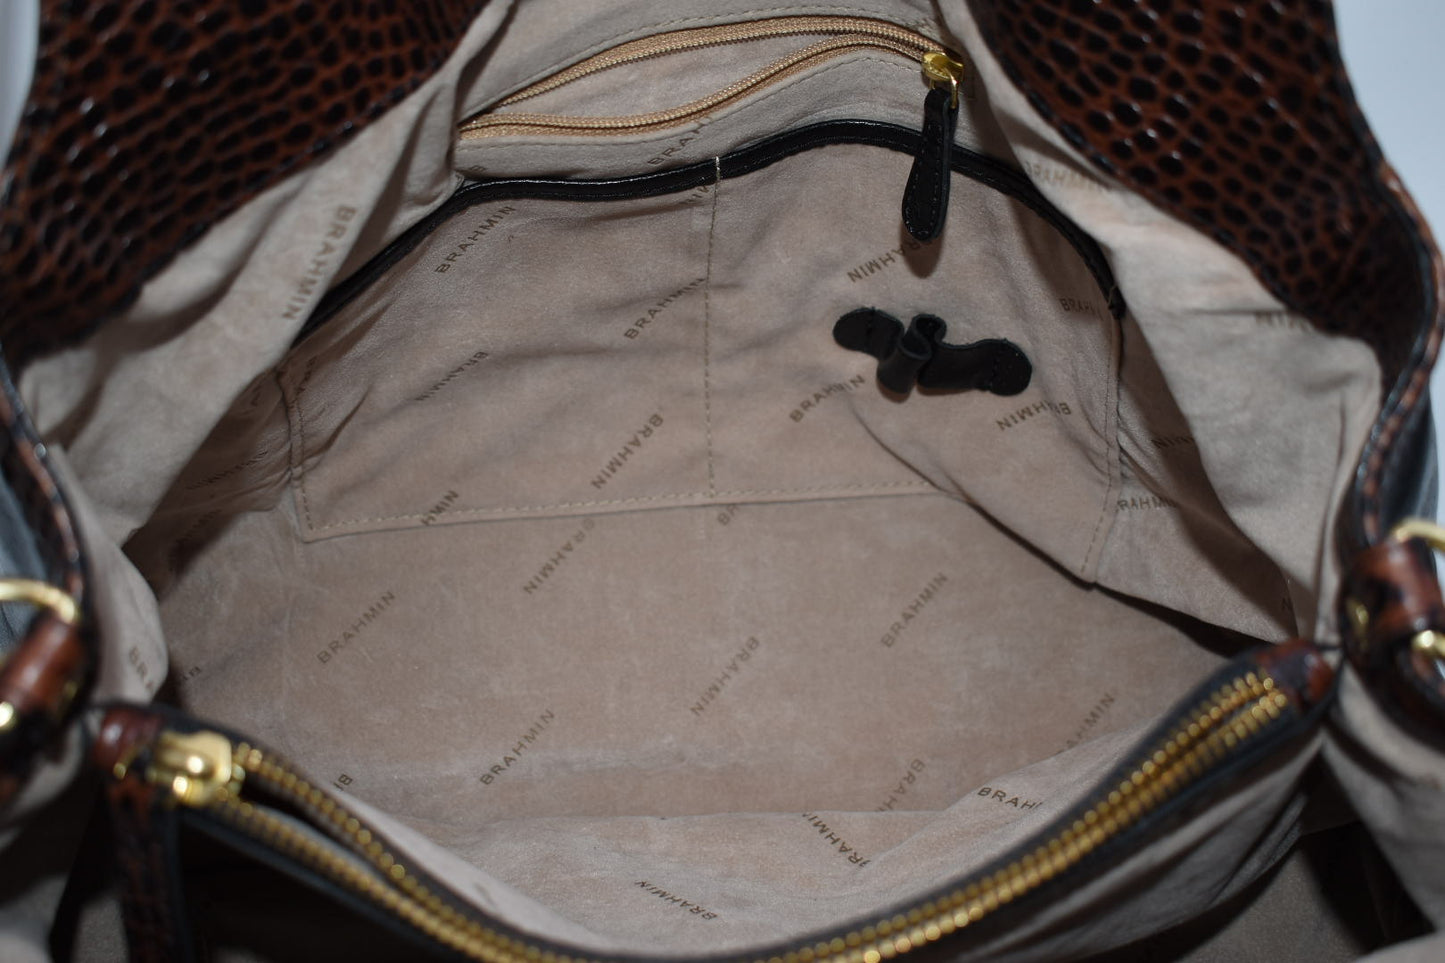 Brahmin Elisa Hobo Bag in Black Tuscan Tri-Texture